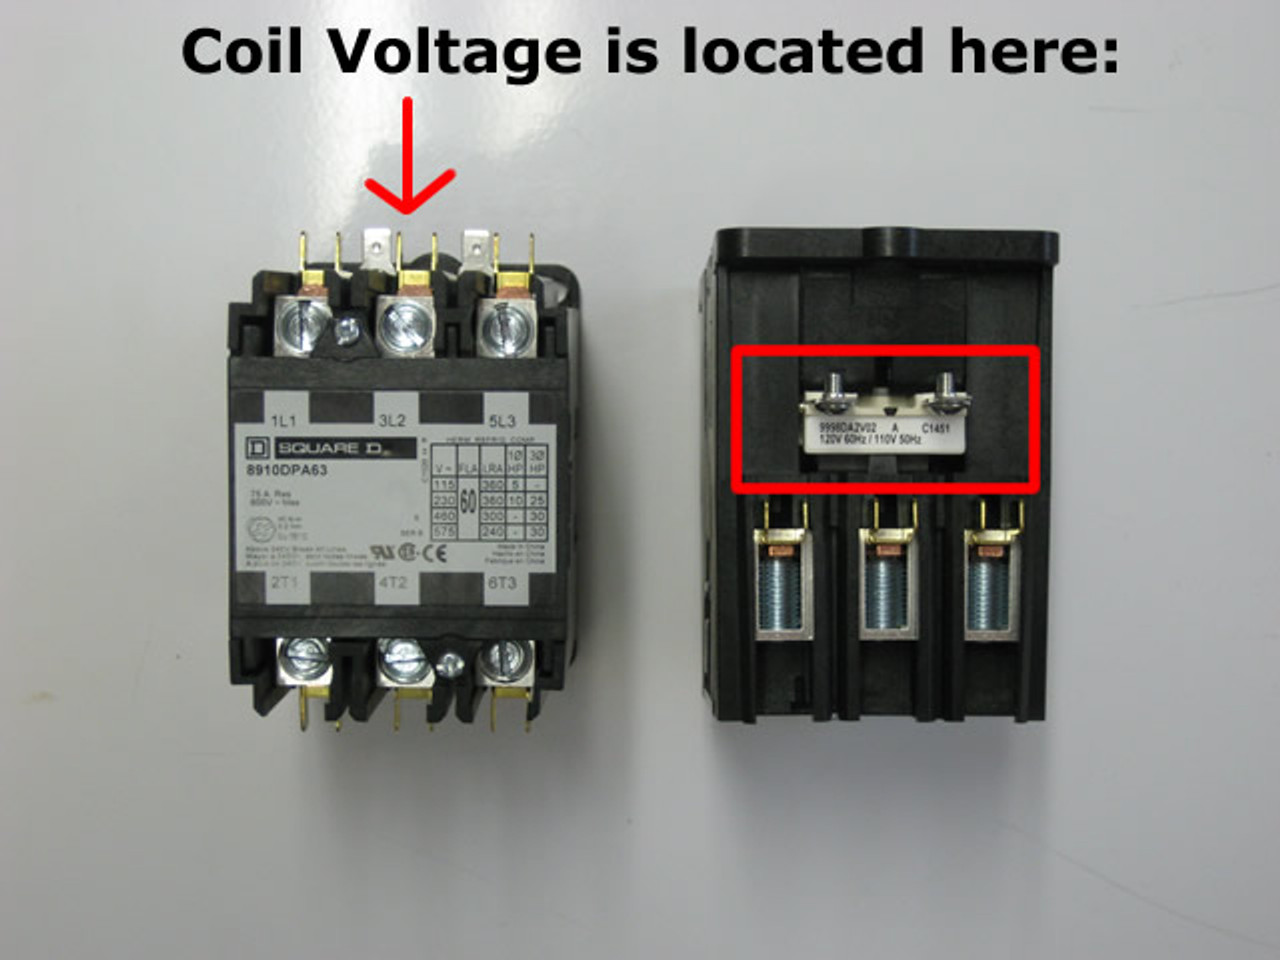 Square D 8910DPA52V02 coil voltage location